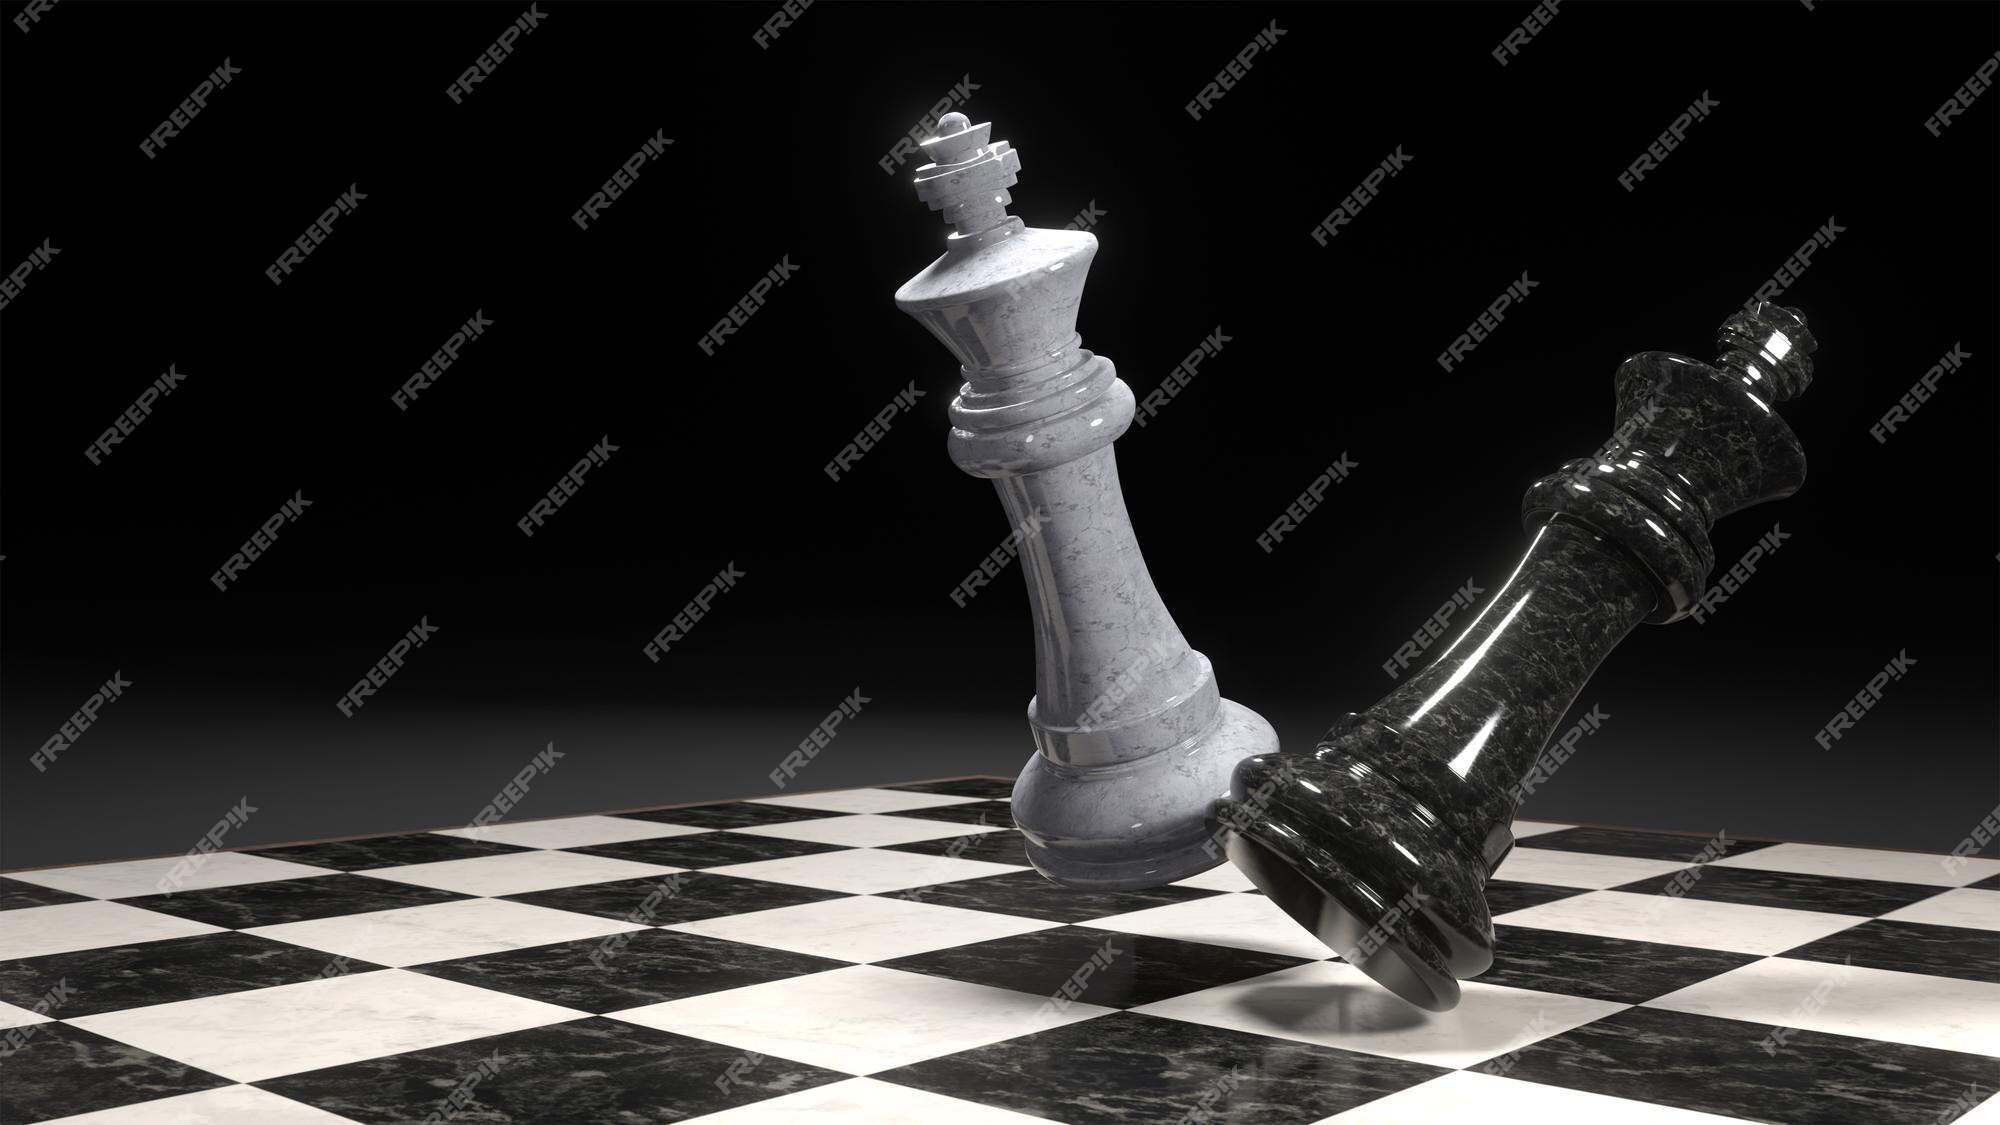 Rei Branco Da Xadrez E Penhor Preto Em Um Tabuleiro De Xadrez Ilustração 3D  Ilustração Stock - Ilustração de lazer, estratégia: 107600707